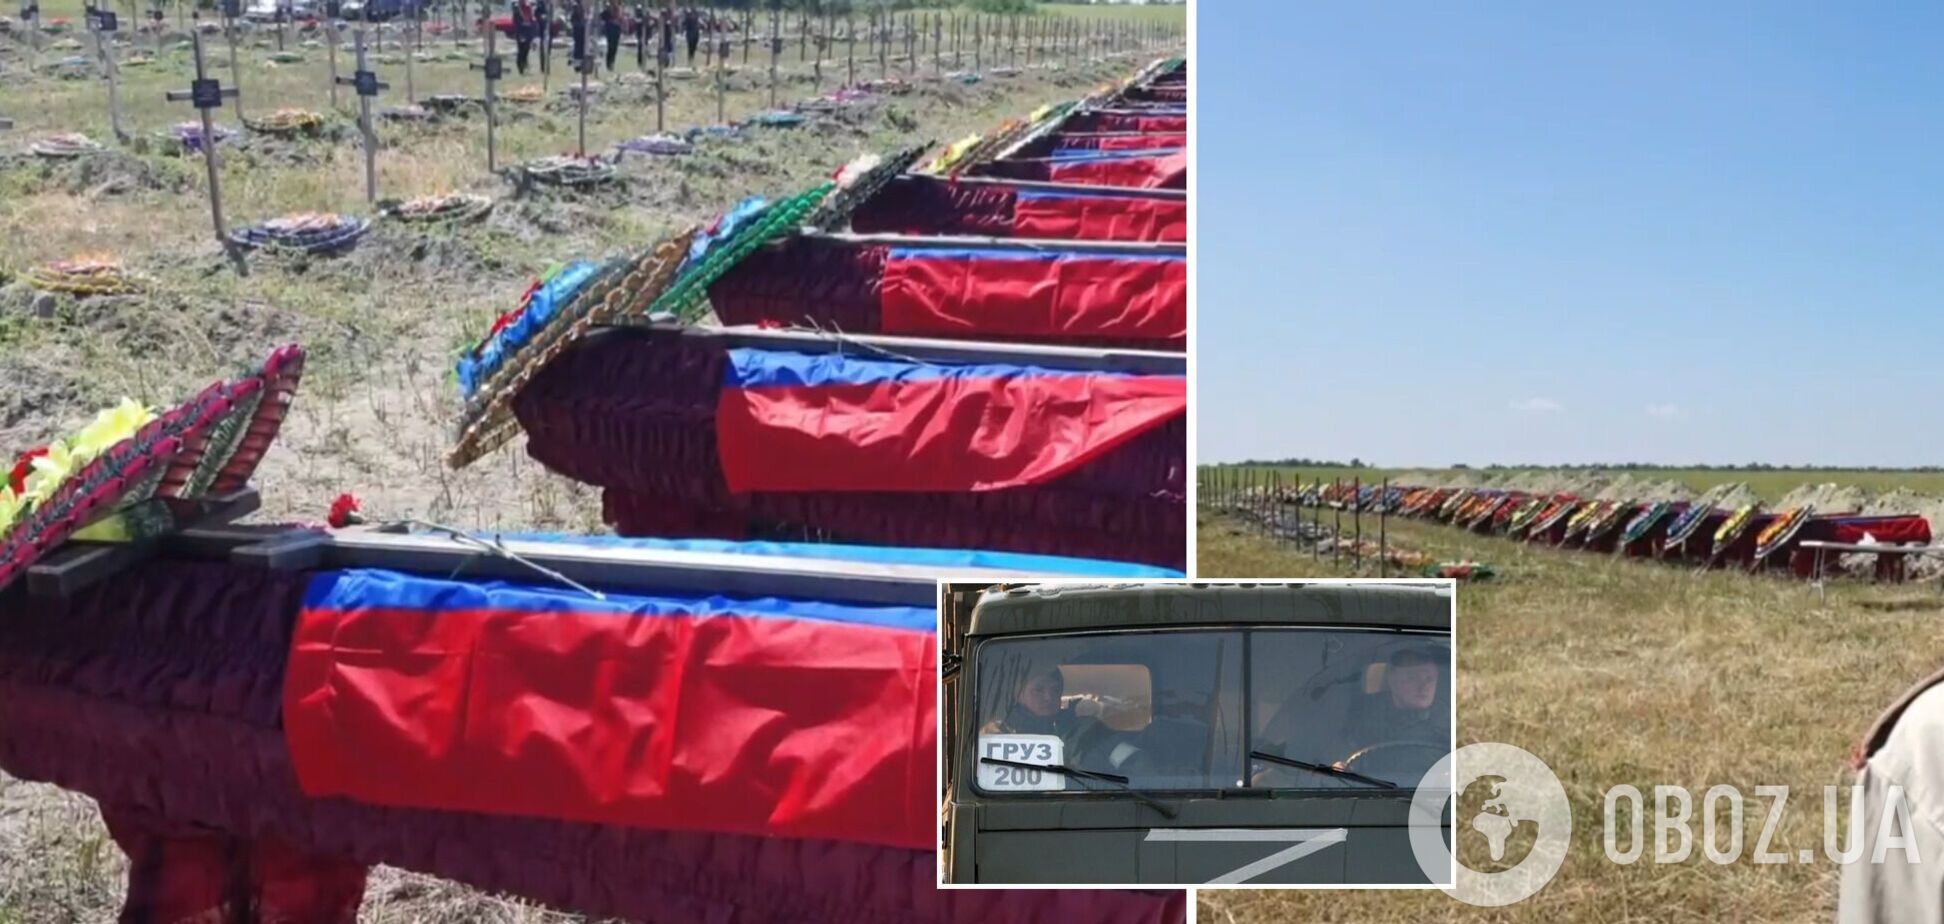 'Втрат немає': у Луганську поховали 58 окупантів, ліквідованих під час захоплення Рубіжного та Сєвєродонецька. Відео